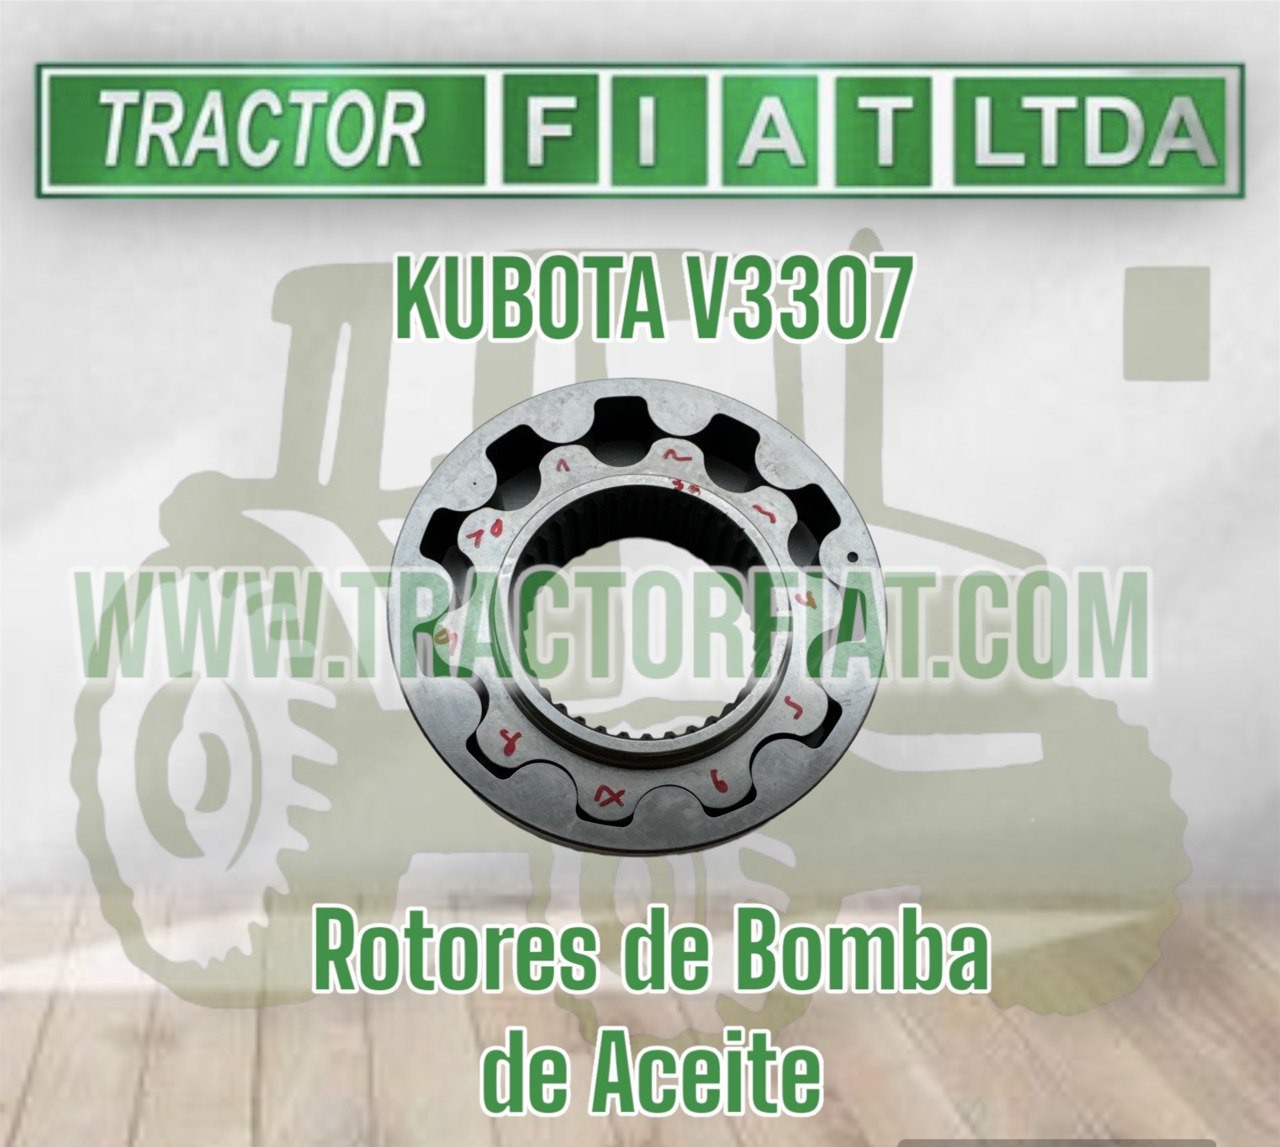 ROTORES DE BOMBA DE ACEITE -MOTOR KUBOTA V3307